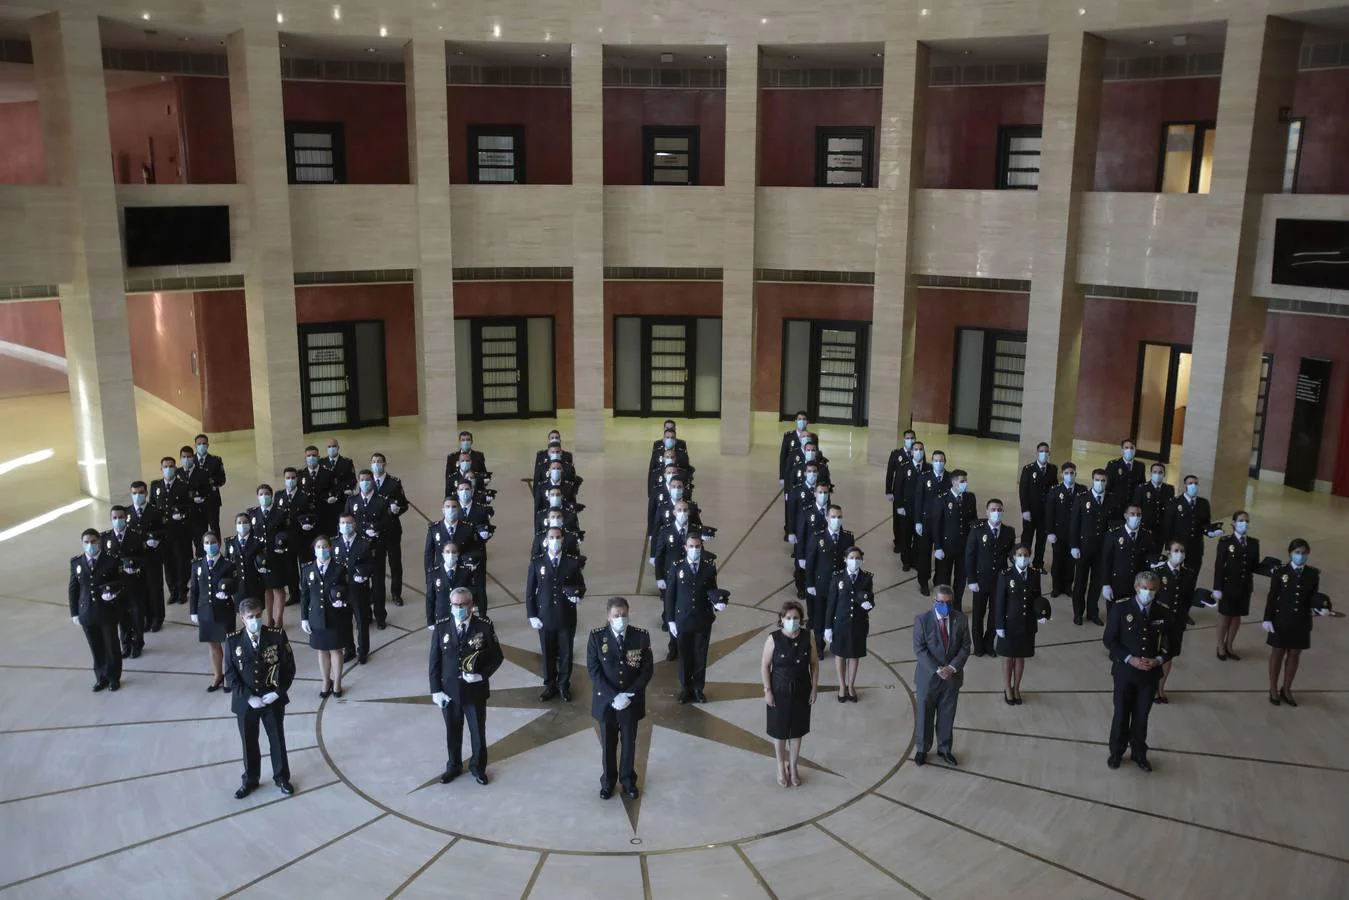 Sevilla acoge la jura de nuevos policías nacionales